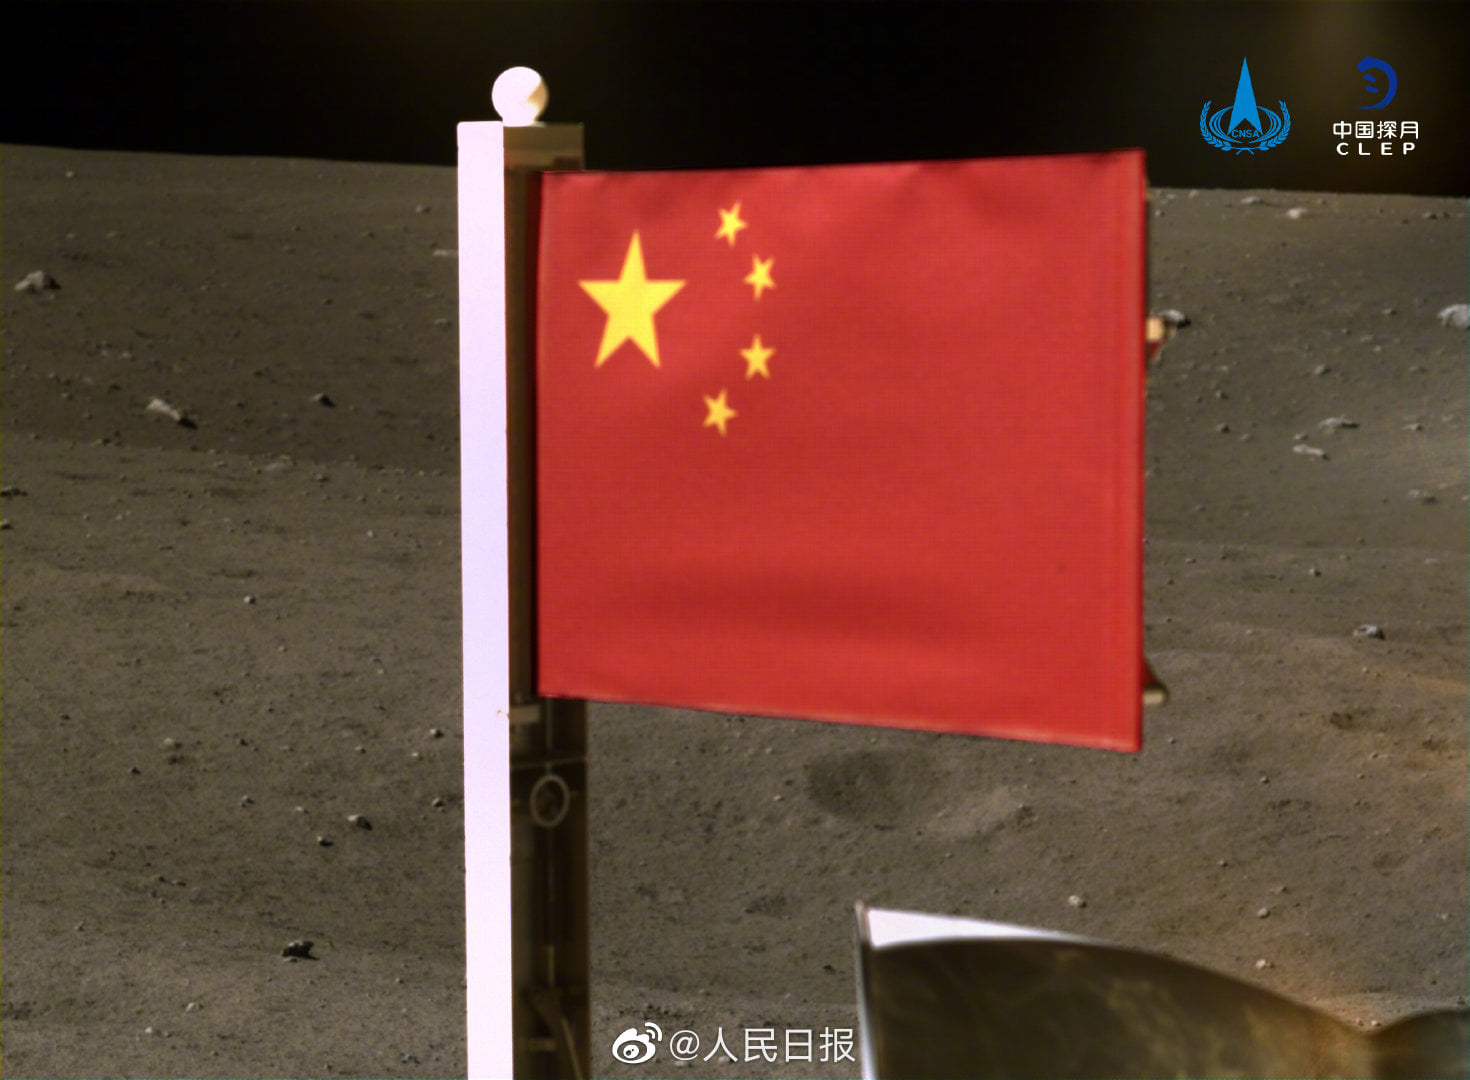 中国国家航天局公佈探月工程嫦娥五号探测器在月球表面国旗展示的照片。   图 : 翻摄自人民日报(photo:NewTalk)